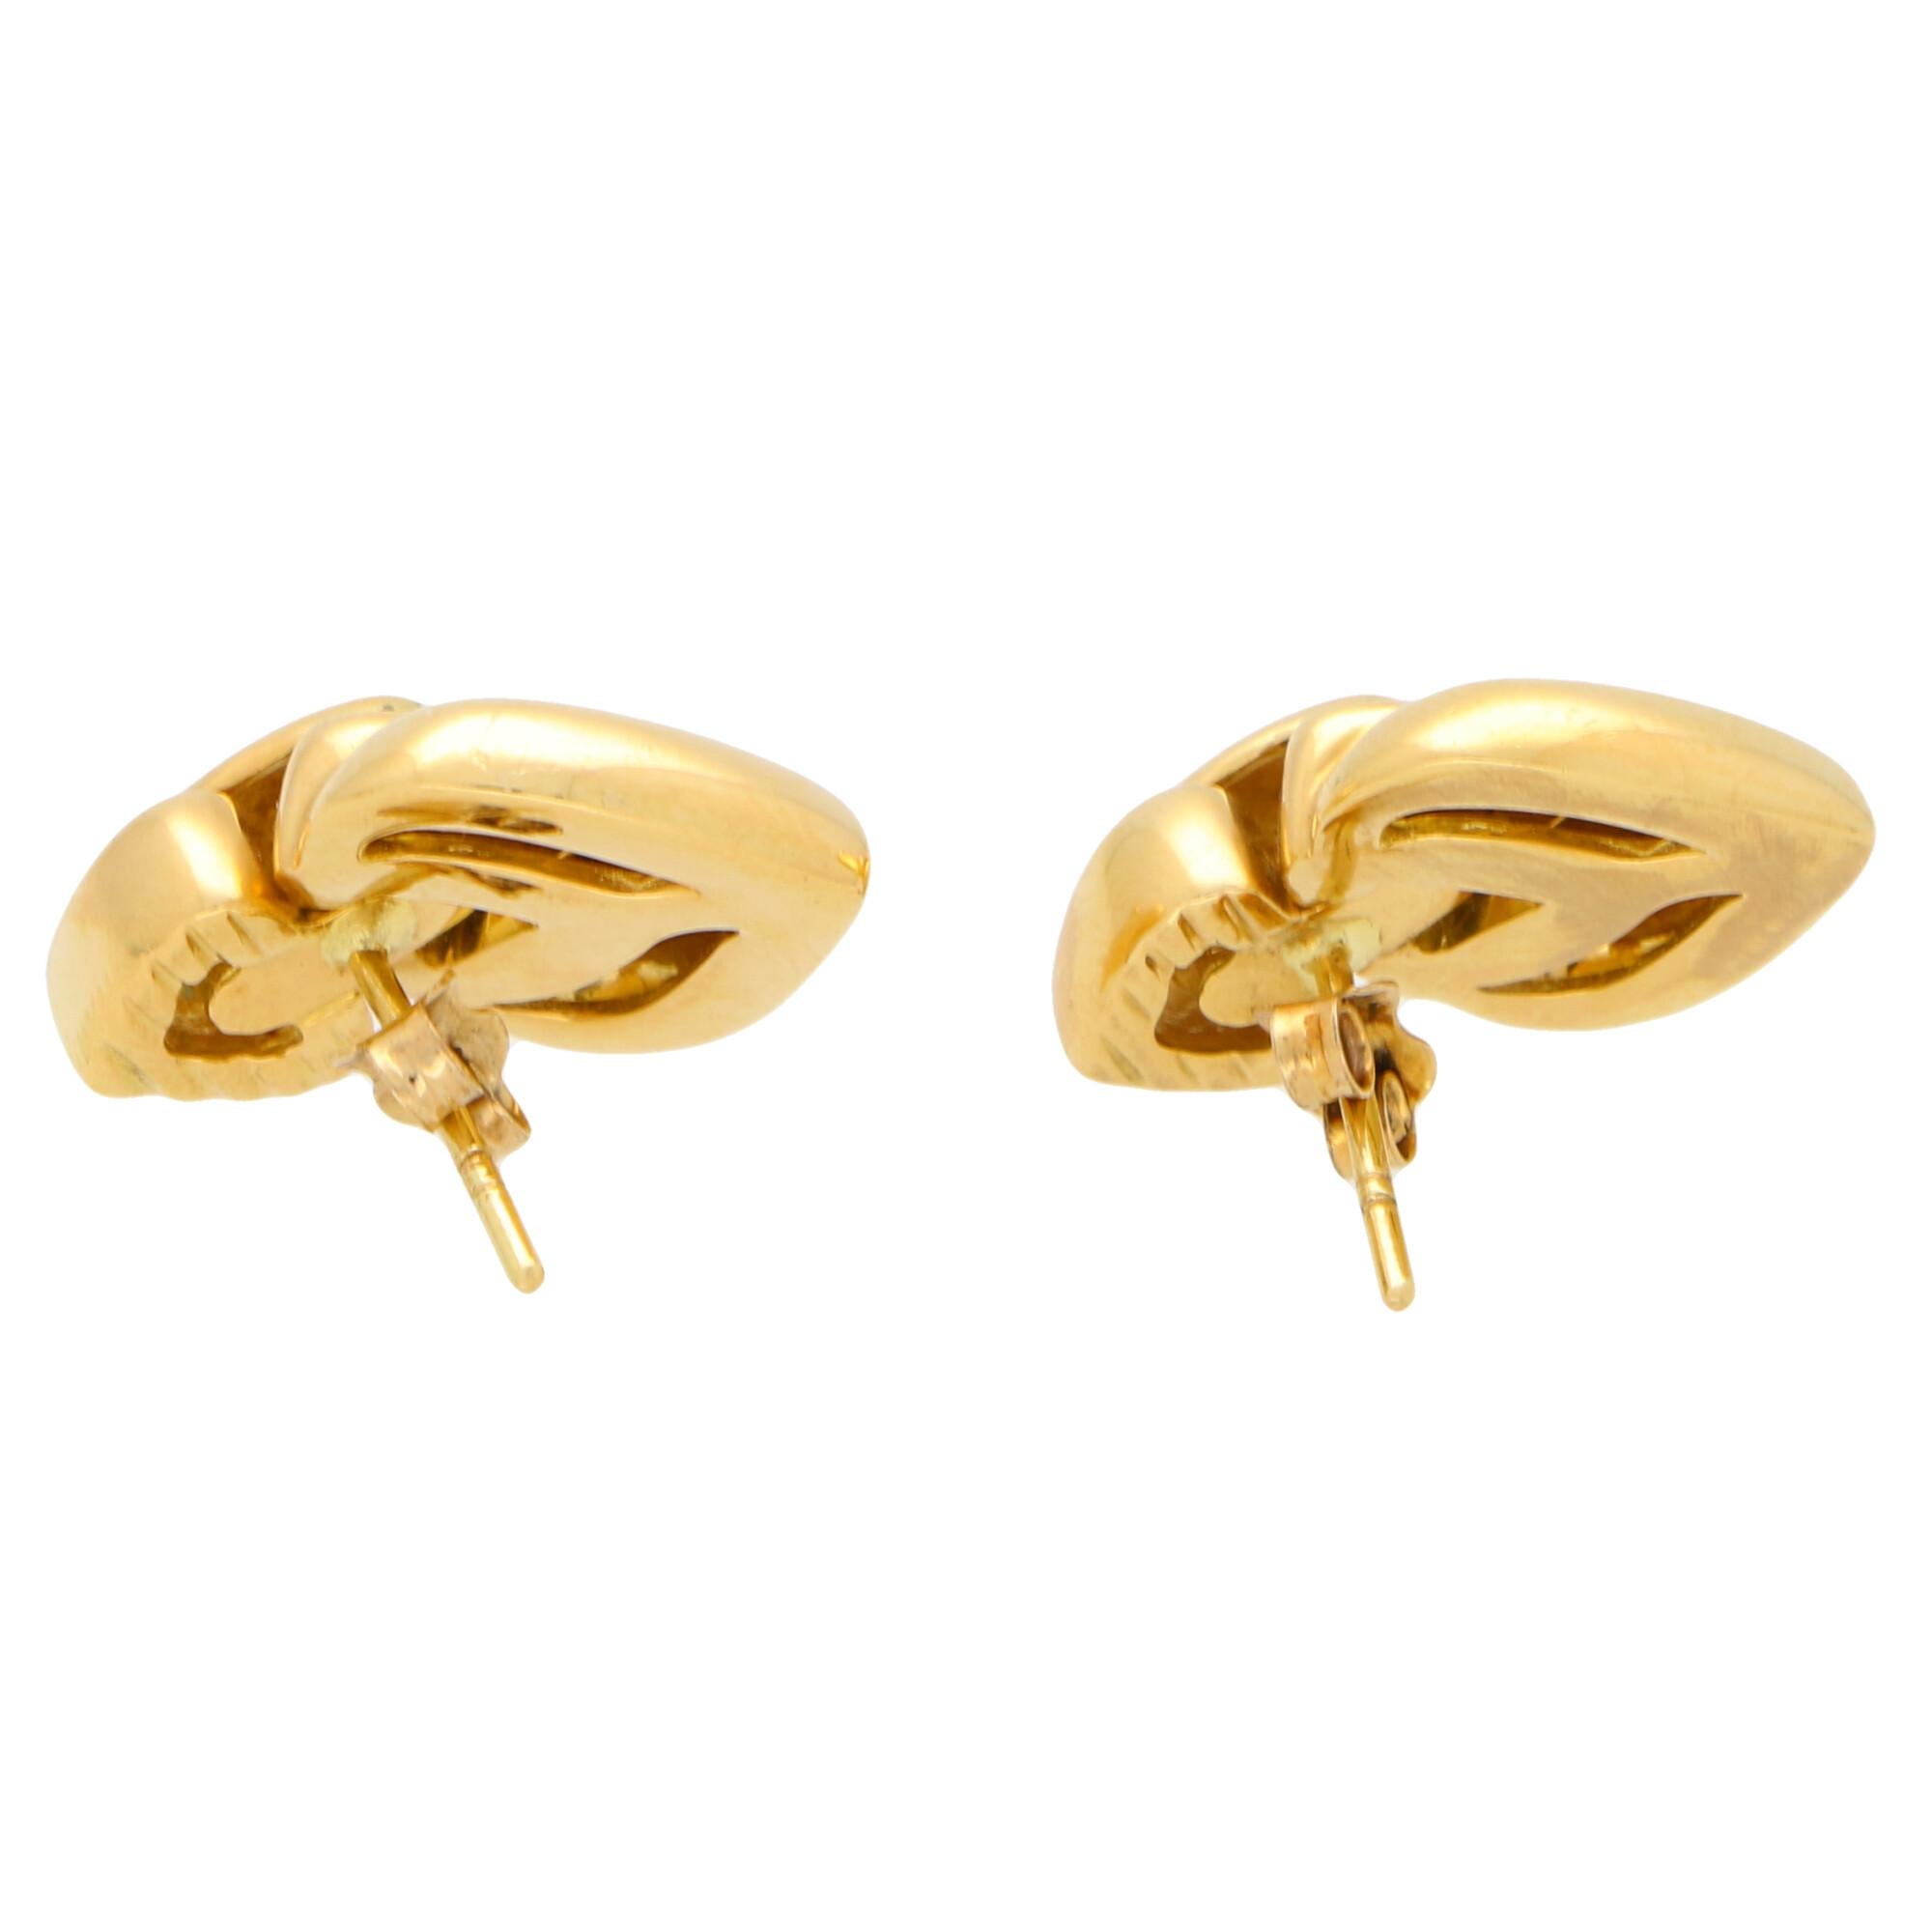 Vintage Heart Drop Earrings Set in 18 Karat Yellow Gold 1